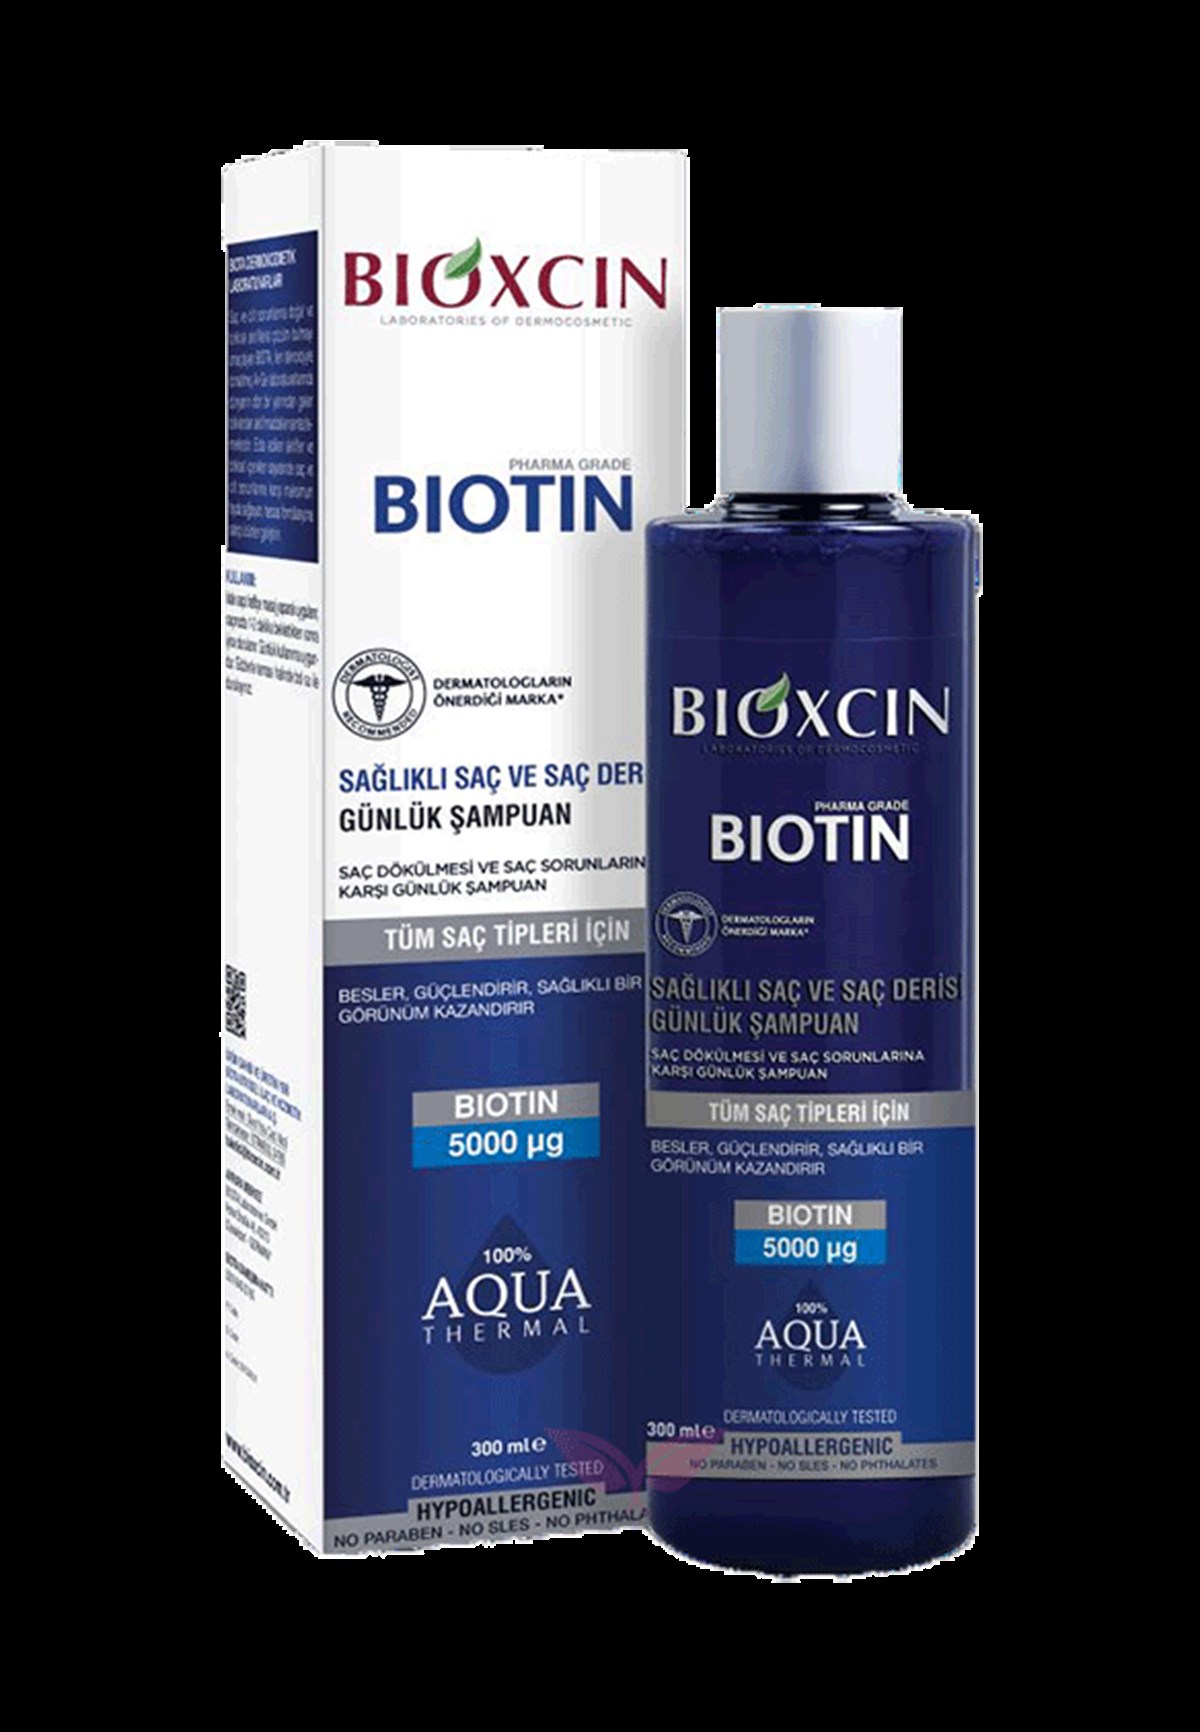 Bioxcin Biotin Şampuan Fiyatları | Dermosiparis.com